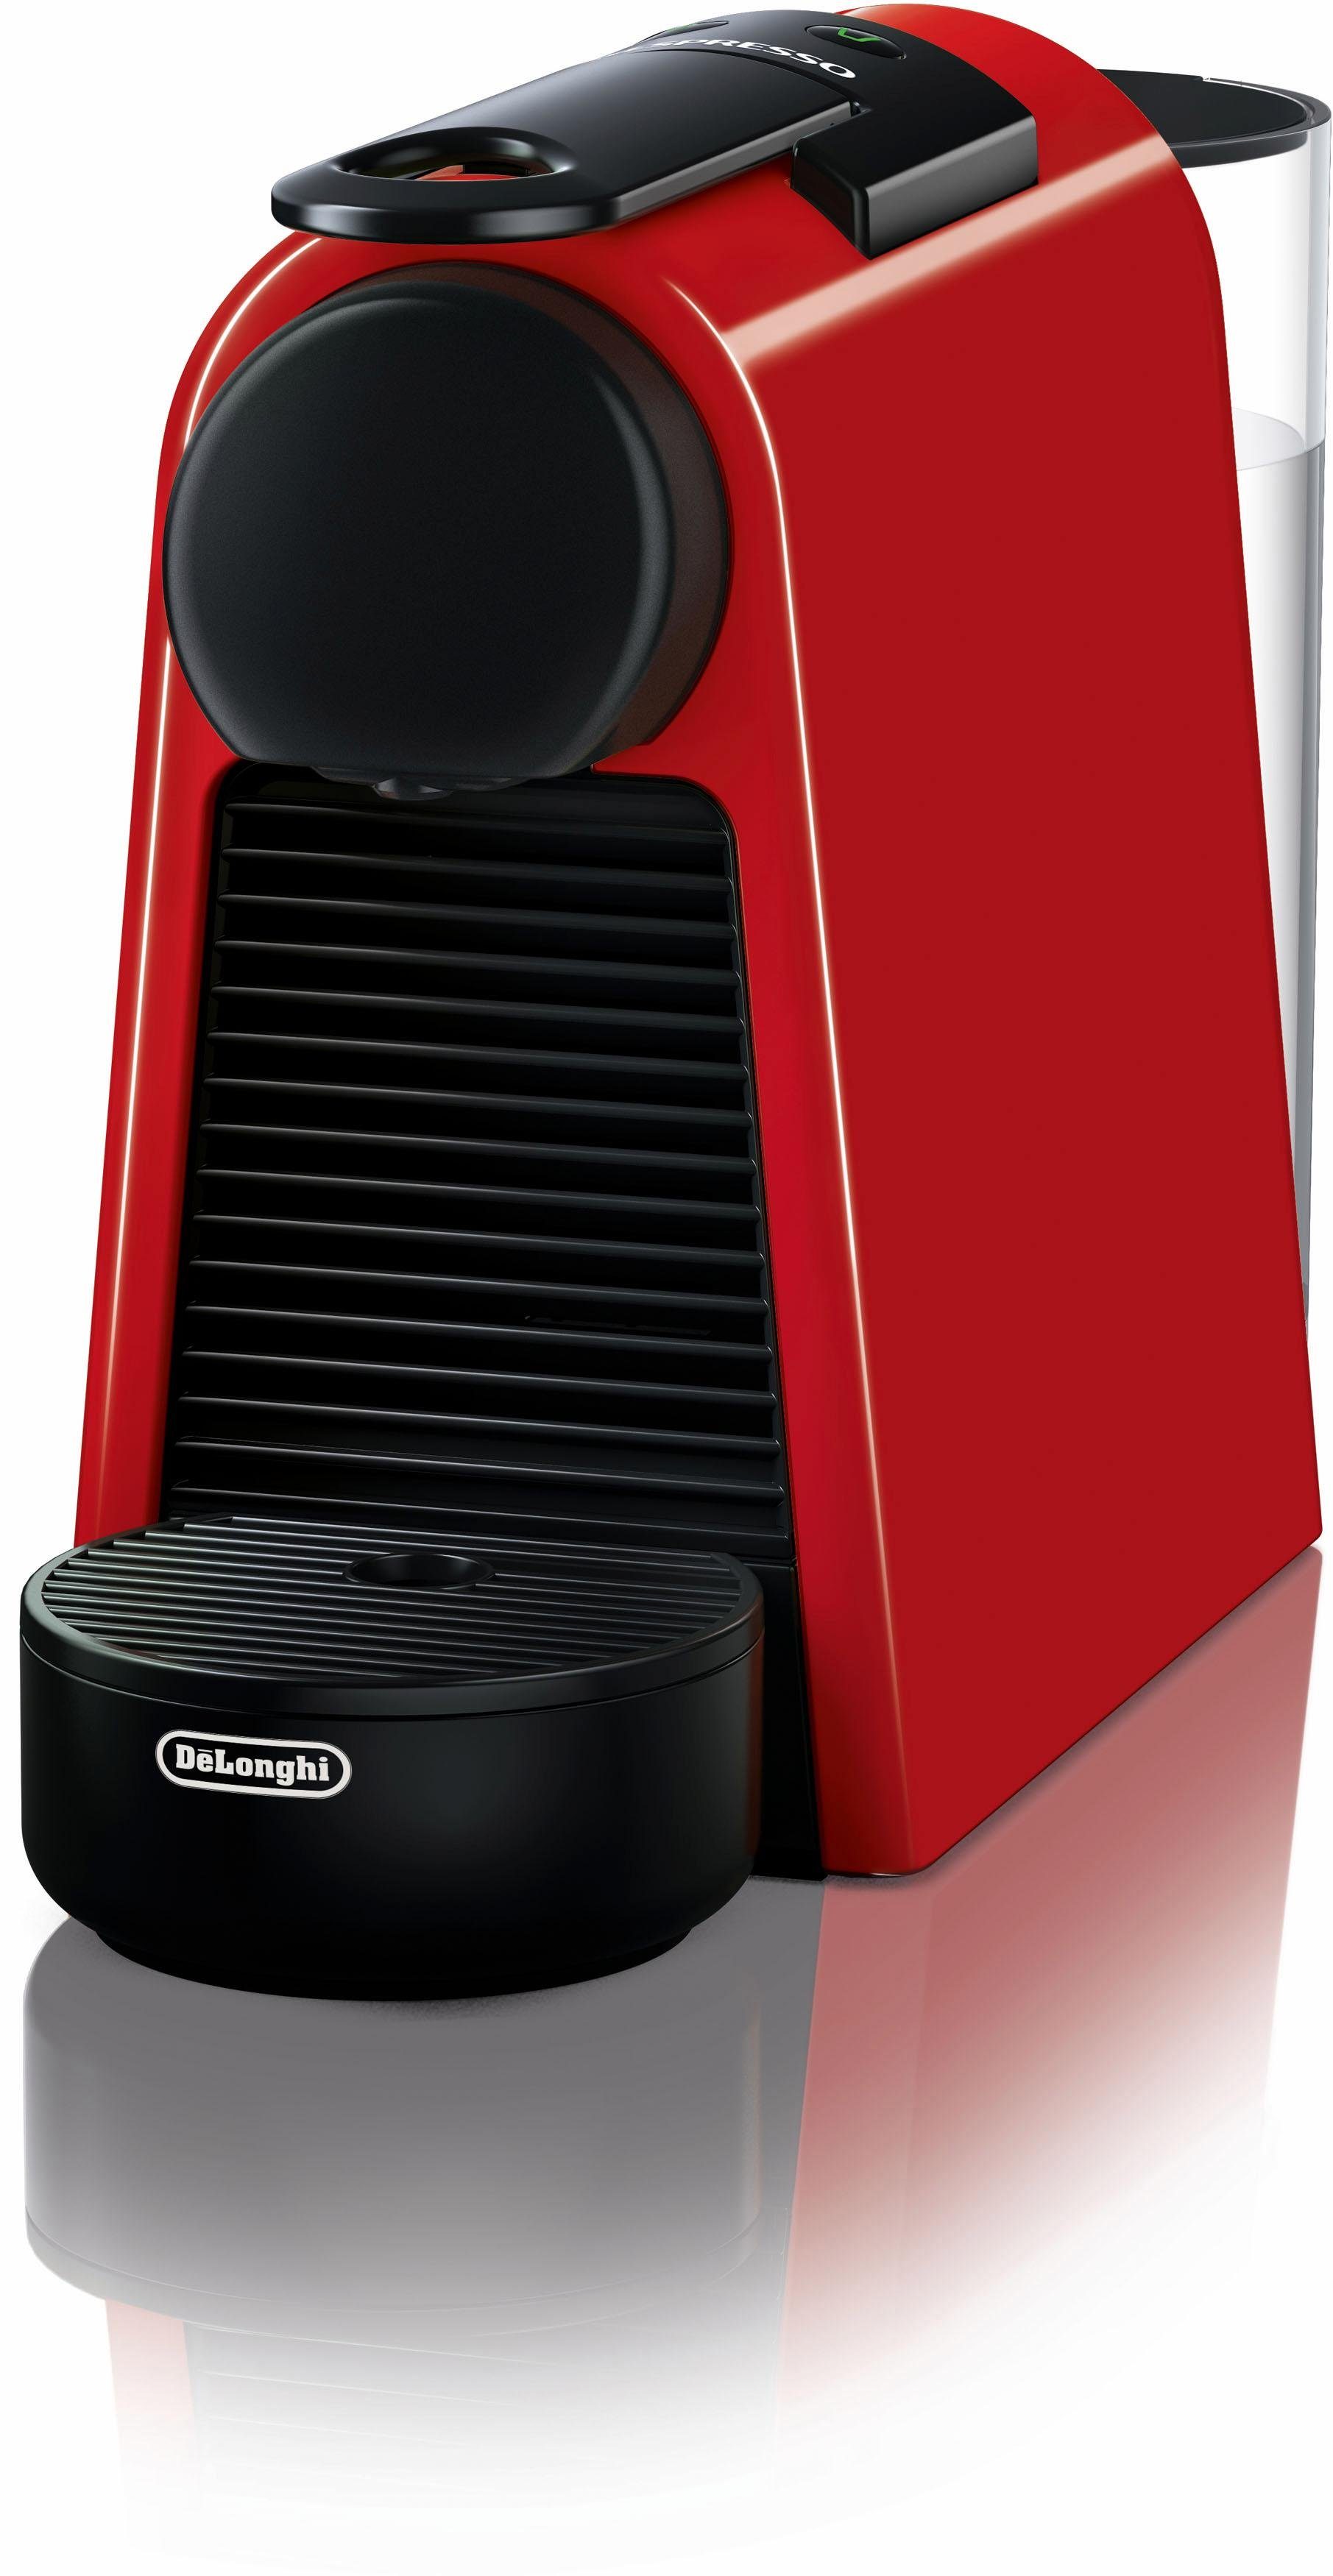 Nespresso Kapselmaschine Essenza Mini EN85.R von DeLonghi, Red, inkl. Willkommenspaket mit 14 Kapseln